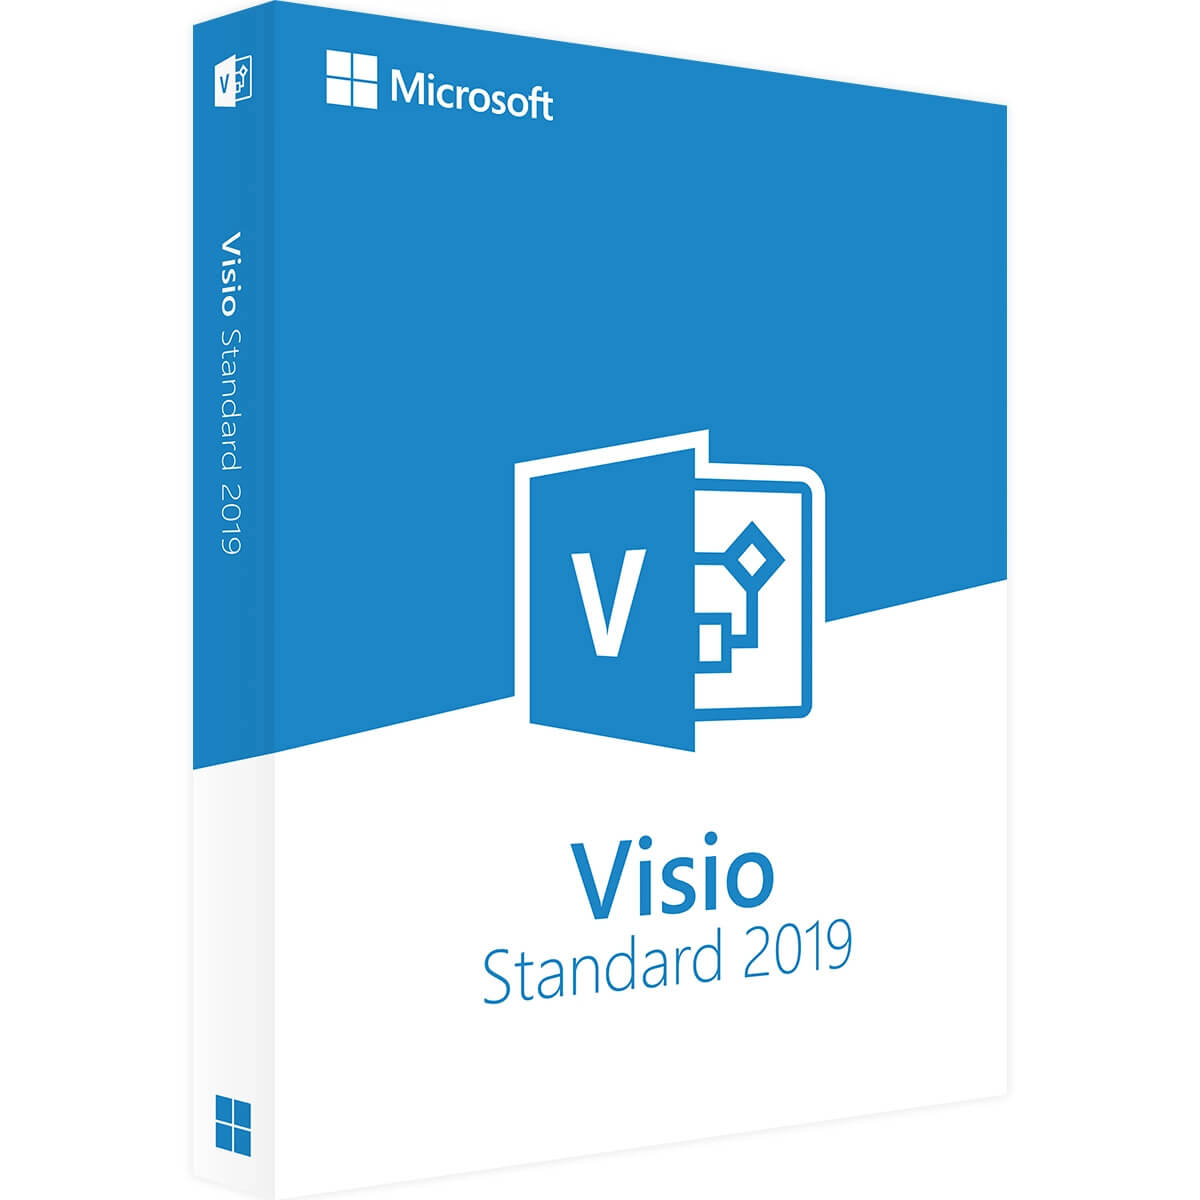 Puede descargar Microsoft Visio 2019 Standard aquí